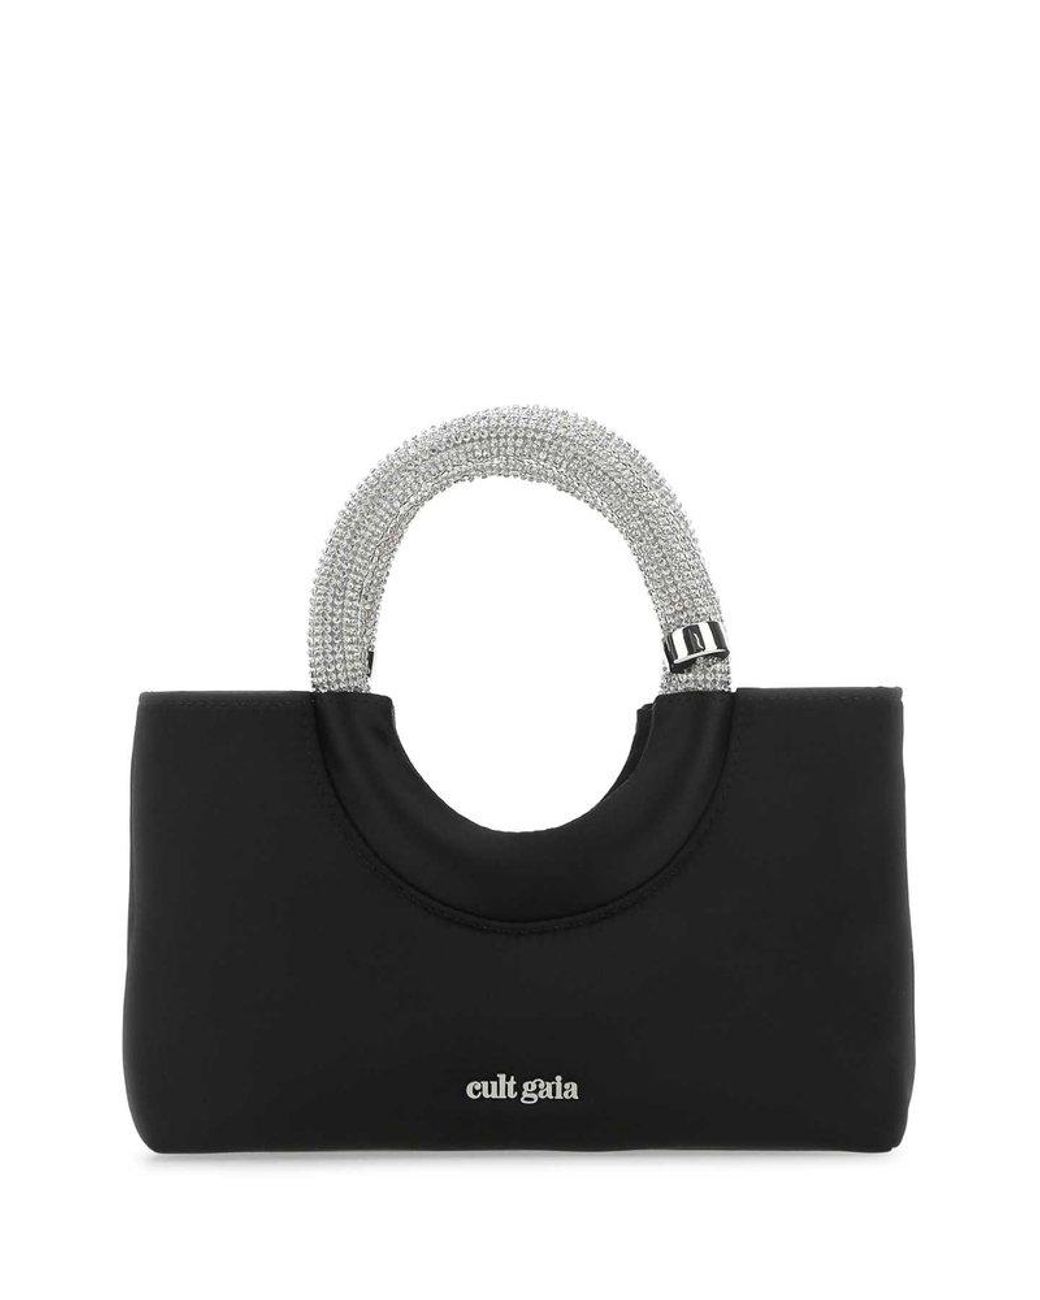 Cult Gaia Handbags. in Black | Lyst